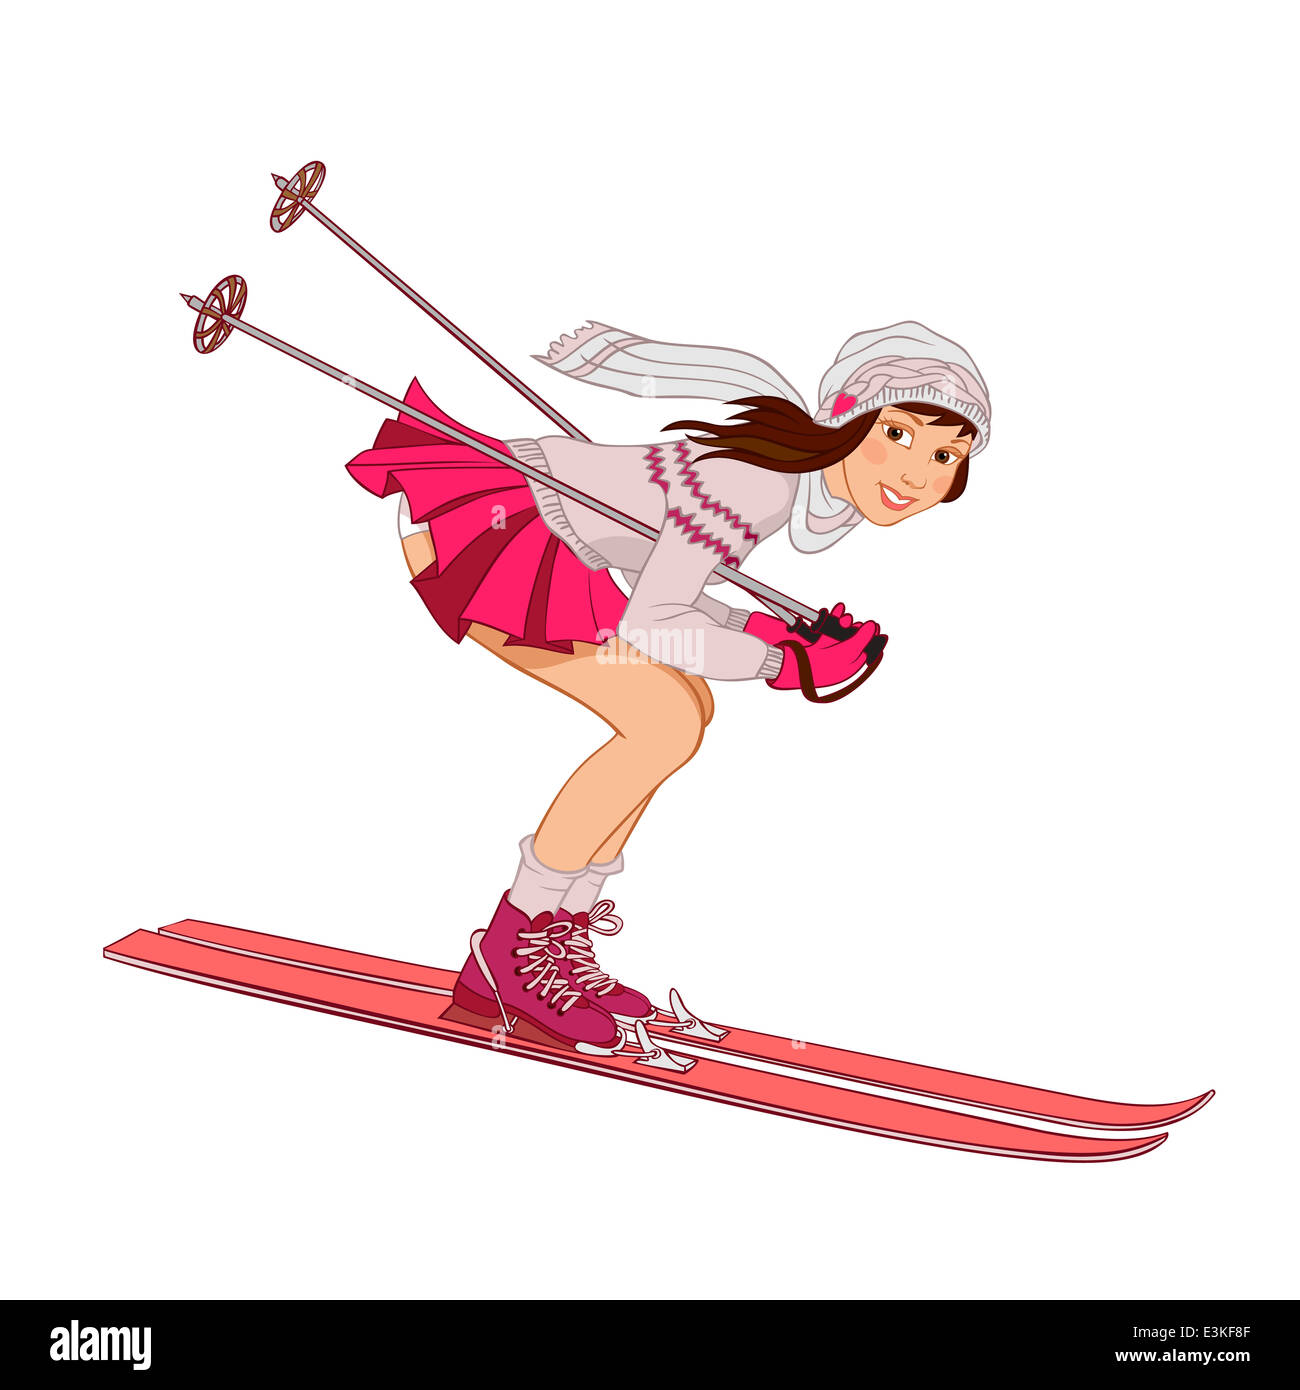 Pin-up en jupe rose ski isolé sur un fond blanc Banque D'Images